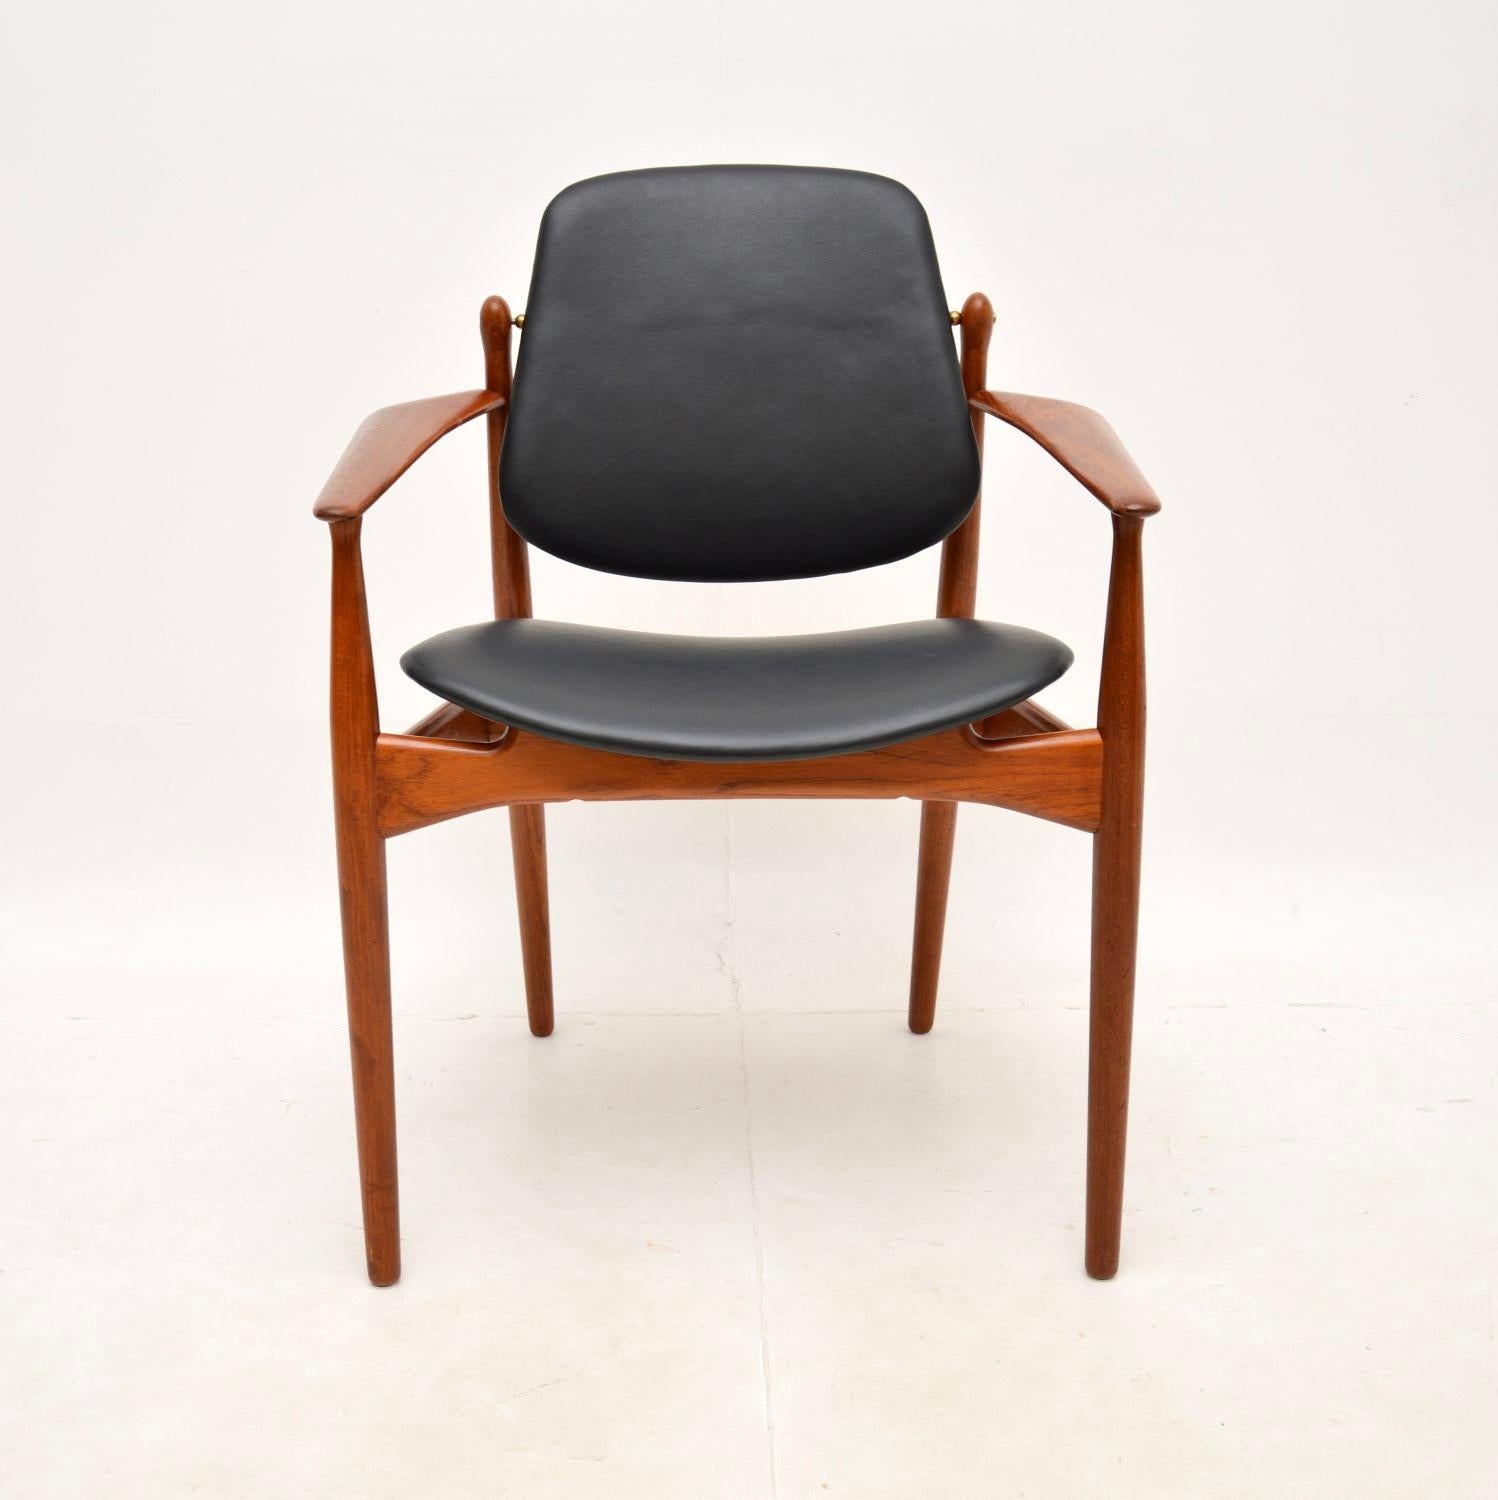 Un magnifique et emblématique fauteuil danois vintage en teck et cuir d'Arne Vodder. Fabriqué au Danemark par France and Son, il date des années 1960.

La qualité est exceptionnelle, il est si bien fait et il est extrêmement confortable. Sa taille